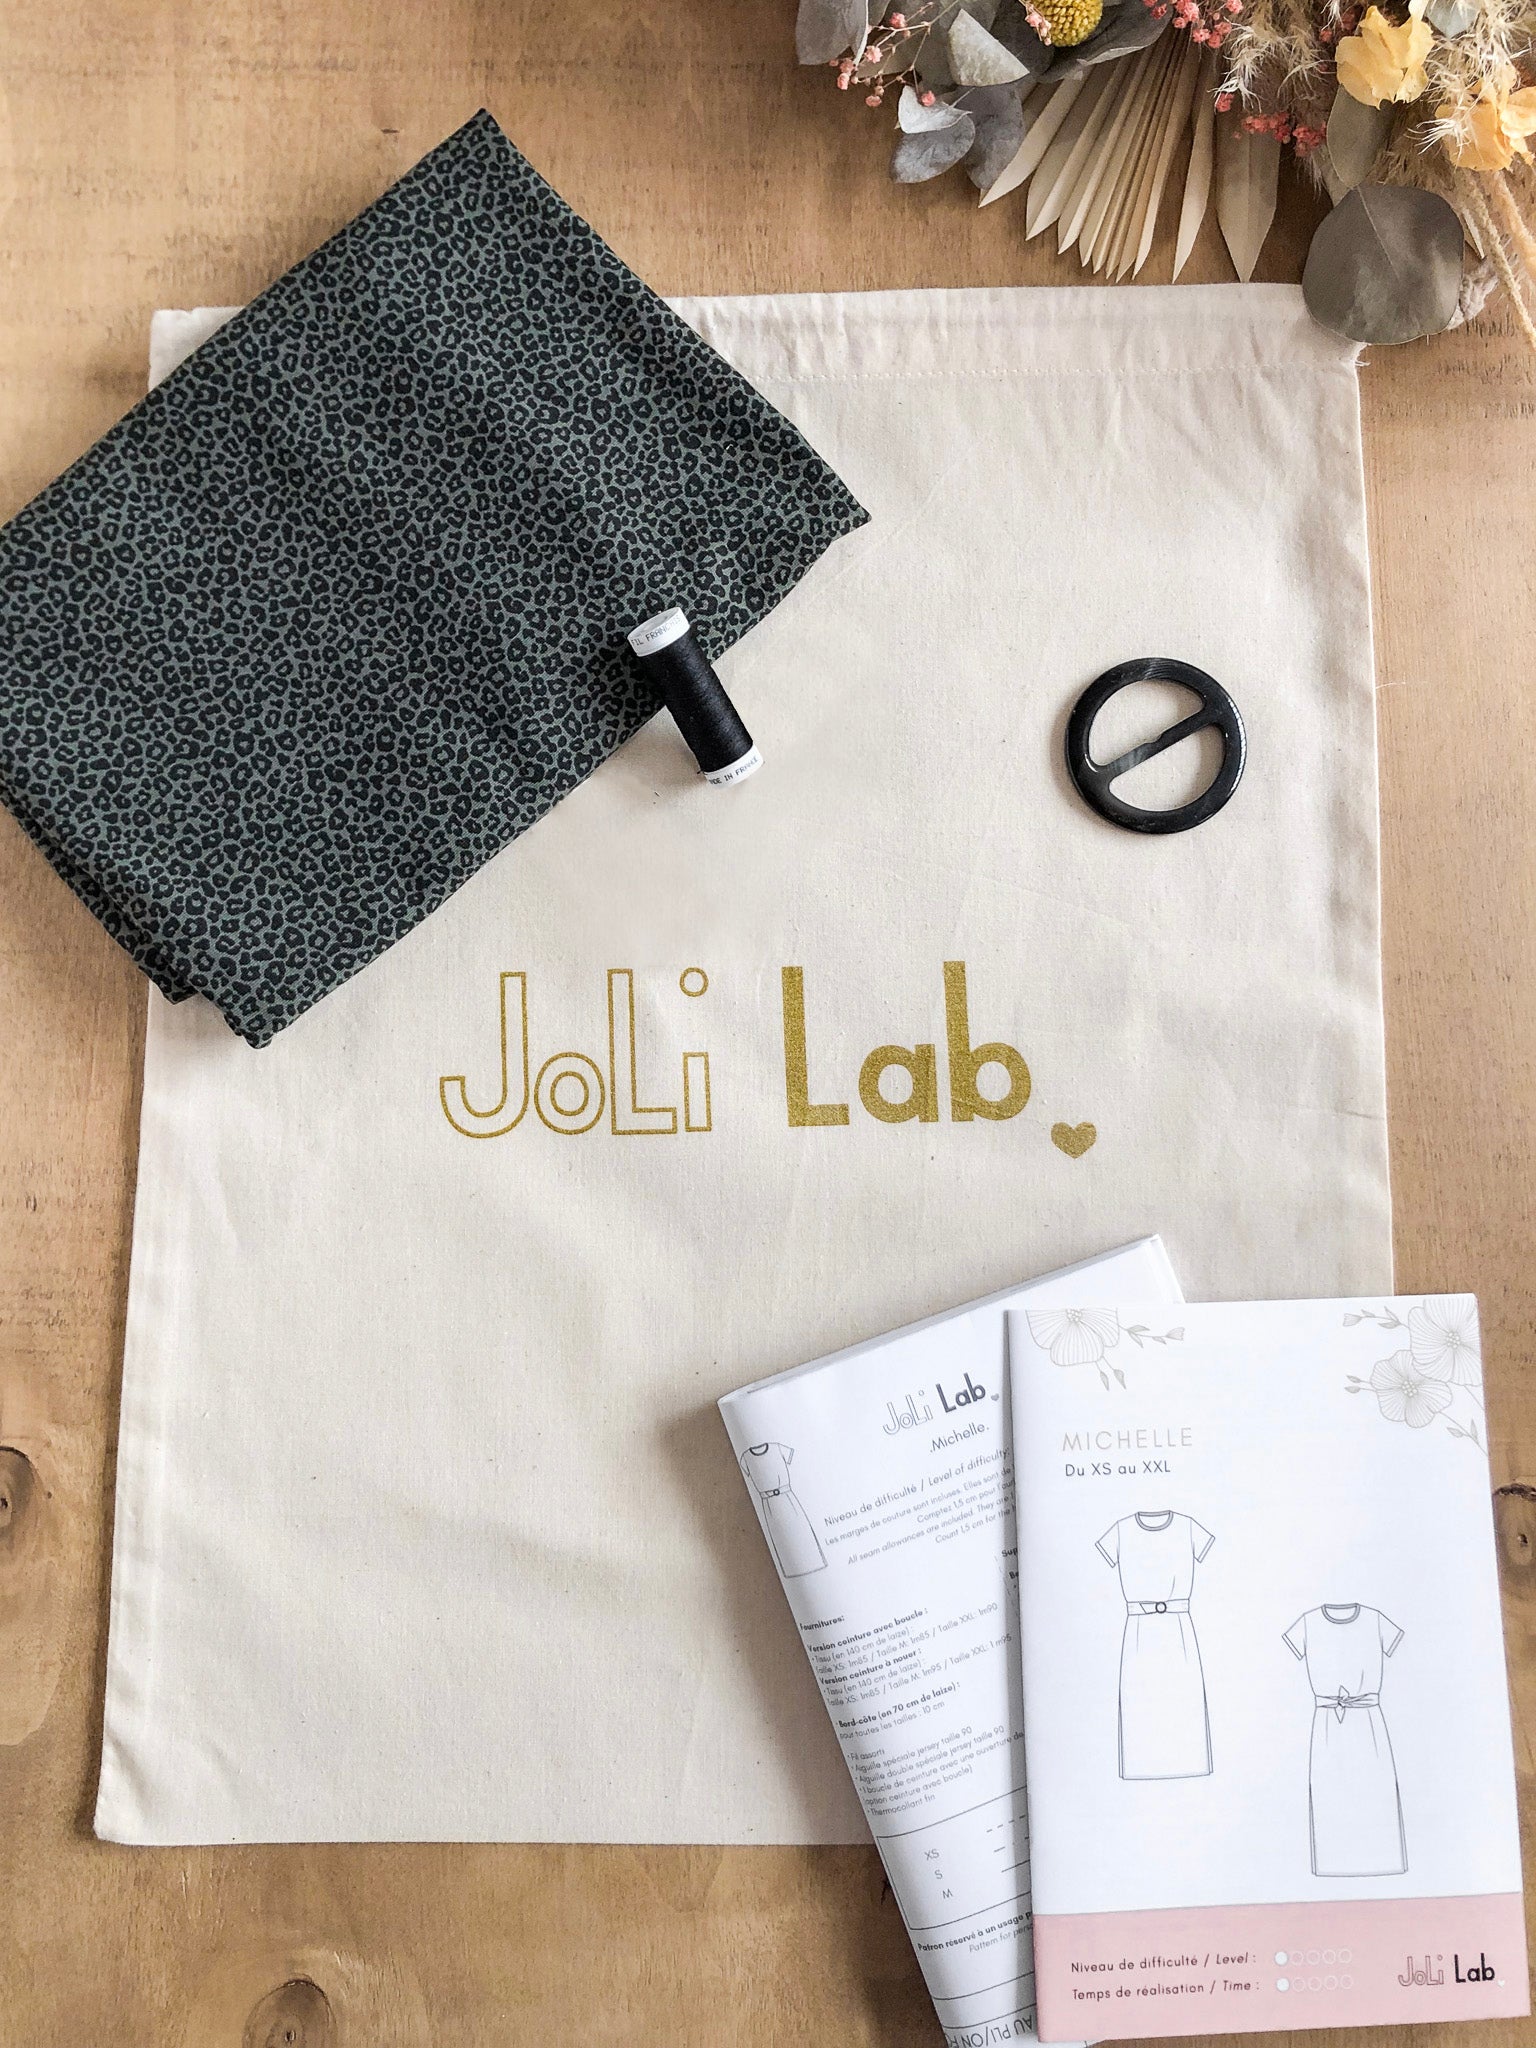 Joli sewing kit - Michelle khaki leopard dress - Joli Lab